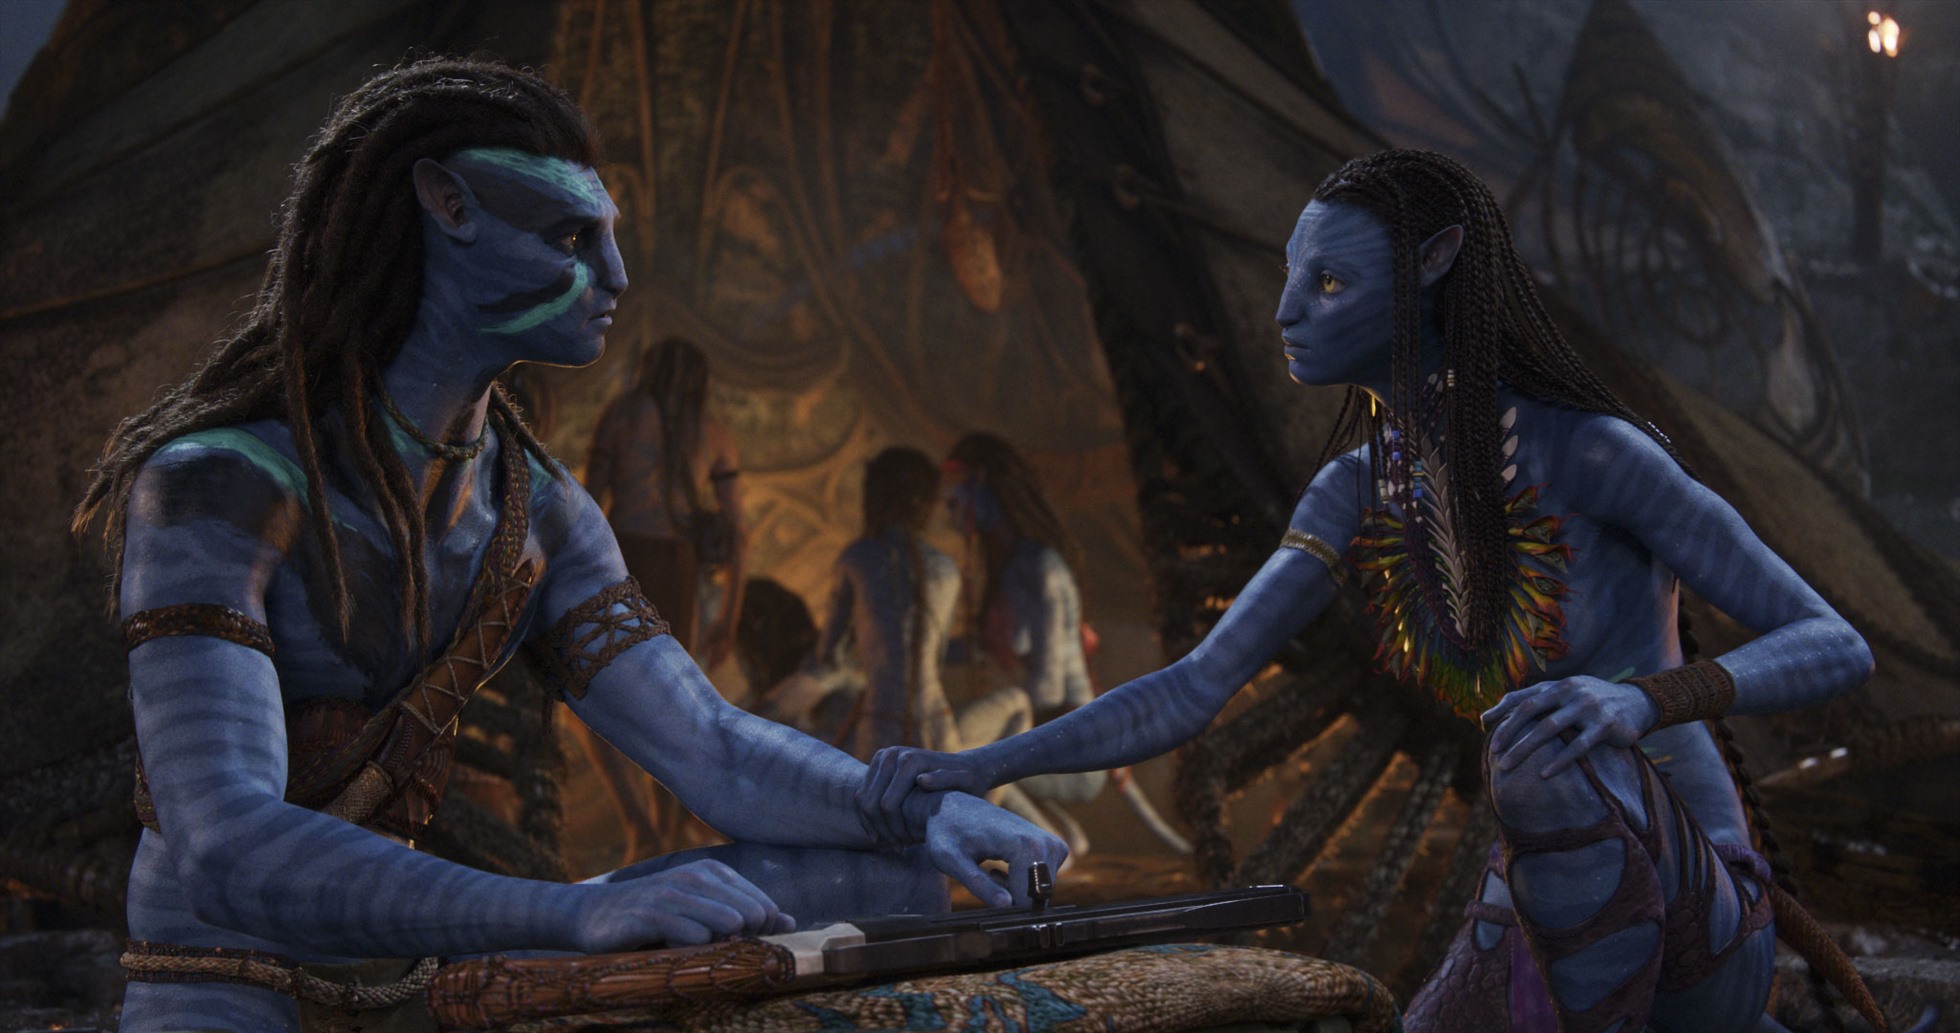 Doanh thu của Avatar 2 gây thất vọng khi thấp hơn mức dự đoán